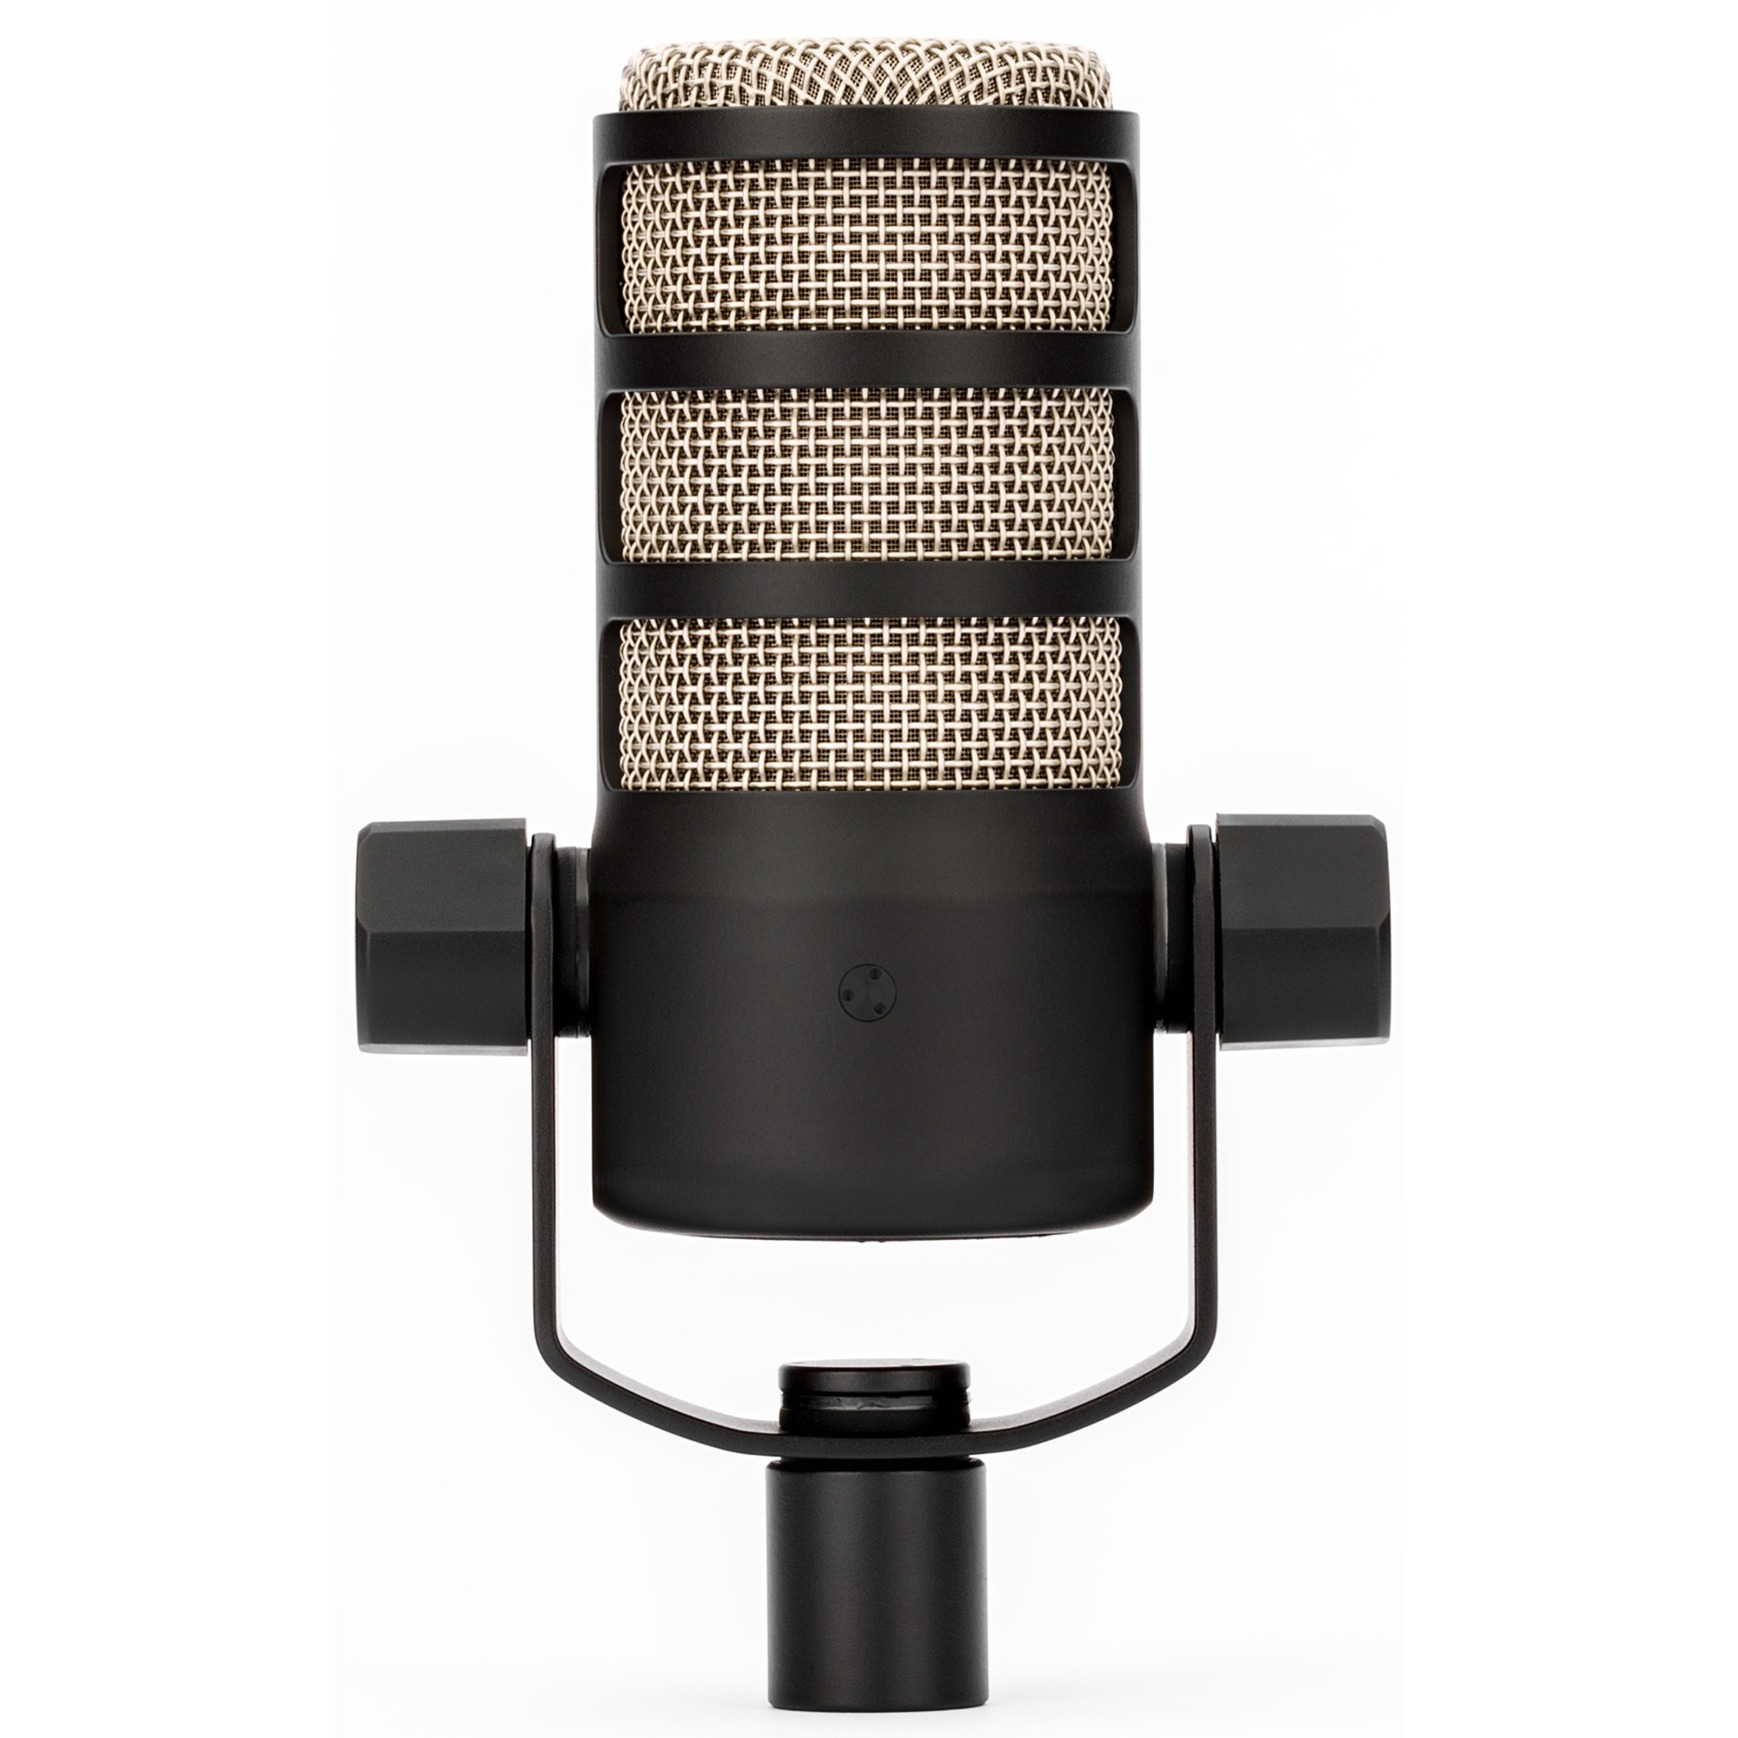 Image of Alternate - PodMic, Mikrofon online einkaufen bei Alternate